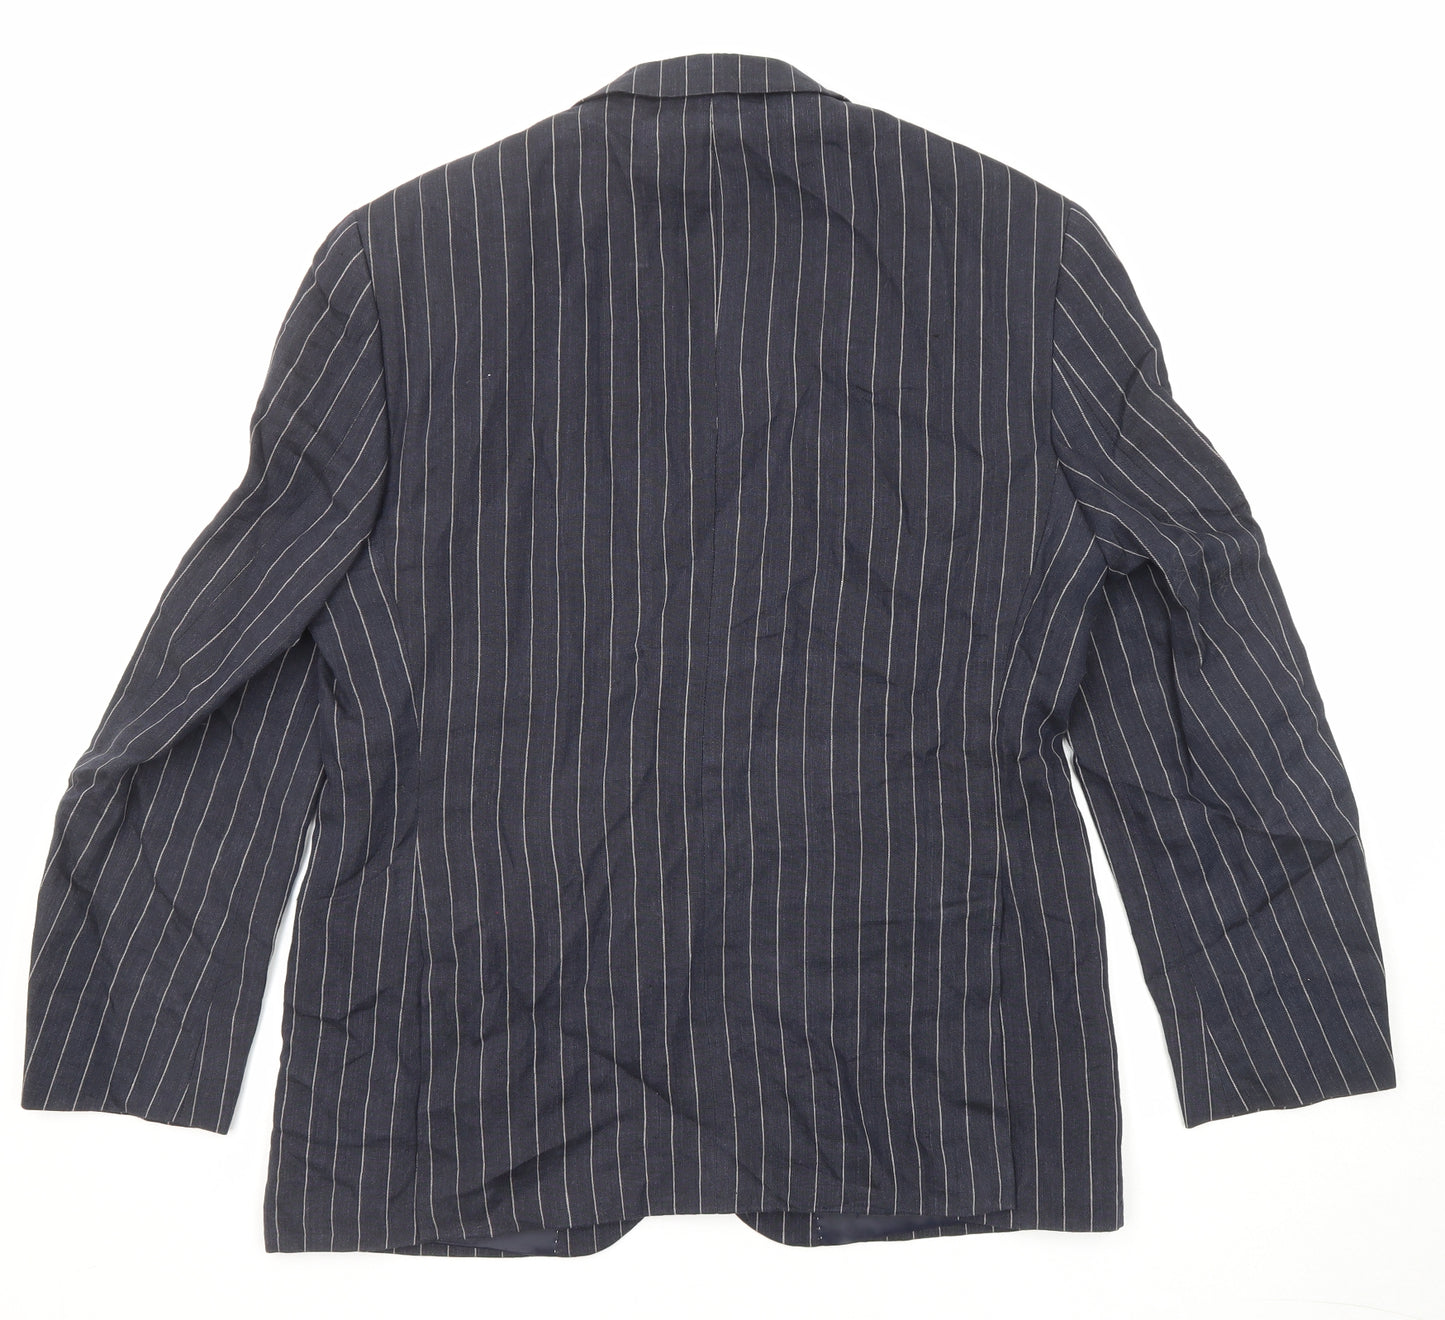 Marks and Spencer Mens Blue Striped Linen Jacket Suit Jacket Size 40 Regular